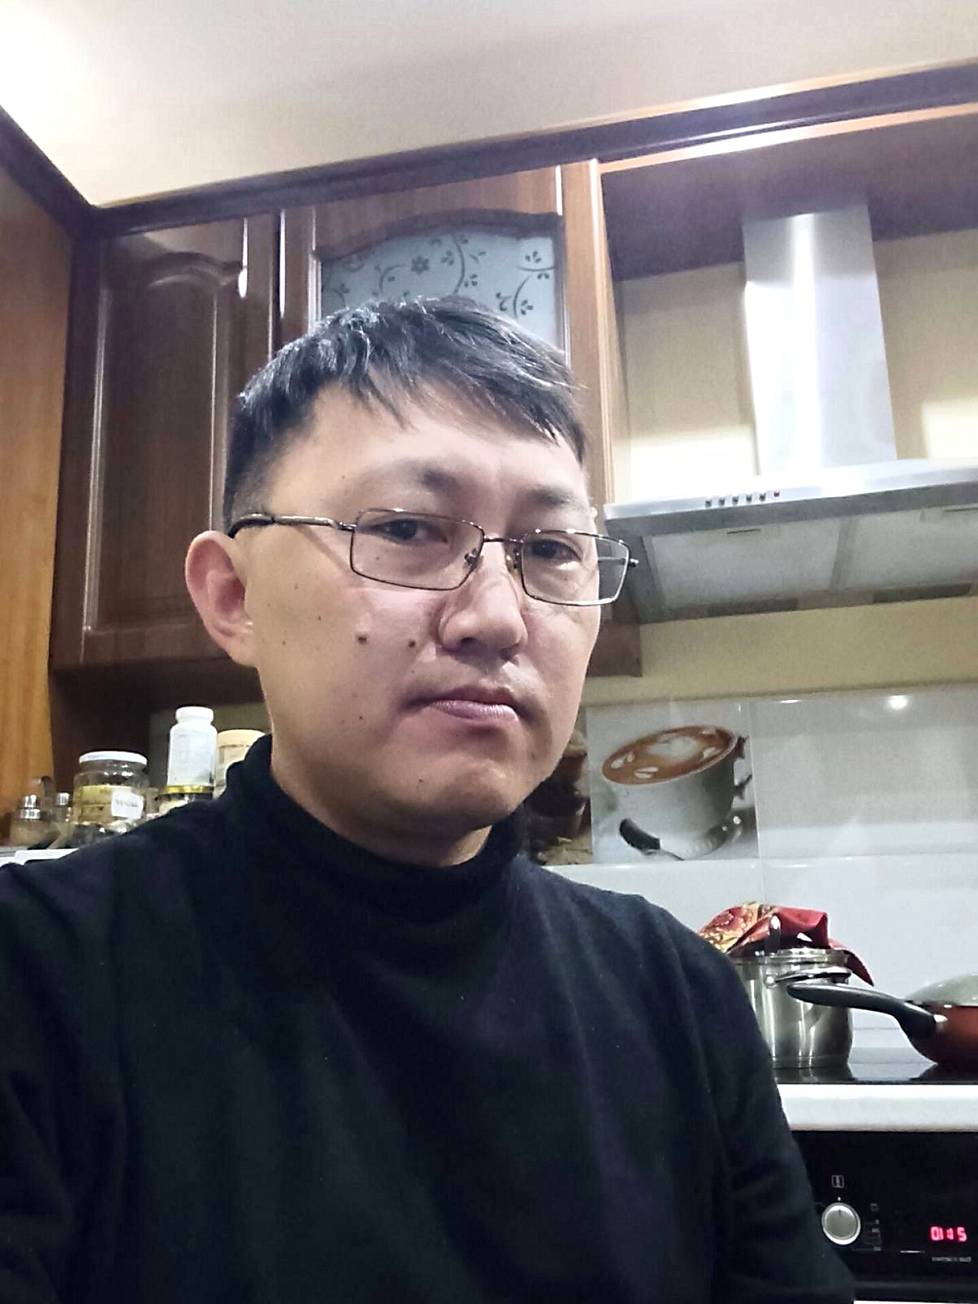 Burjatialainen oppositioaktivisti Purbo Daibijev pakeni liikekannallepanoa viime syksynä Ulan-Batoriin, Mongoliaan. Siellä hän auttaa maanmiehiään löytämään töitä ja asunnon.